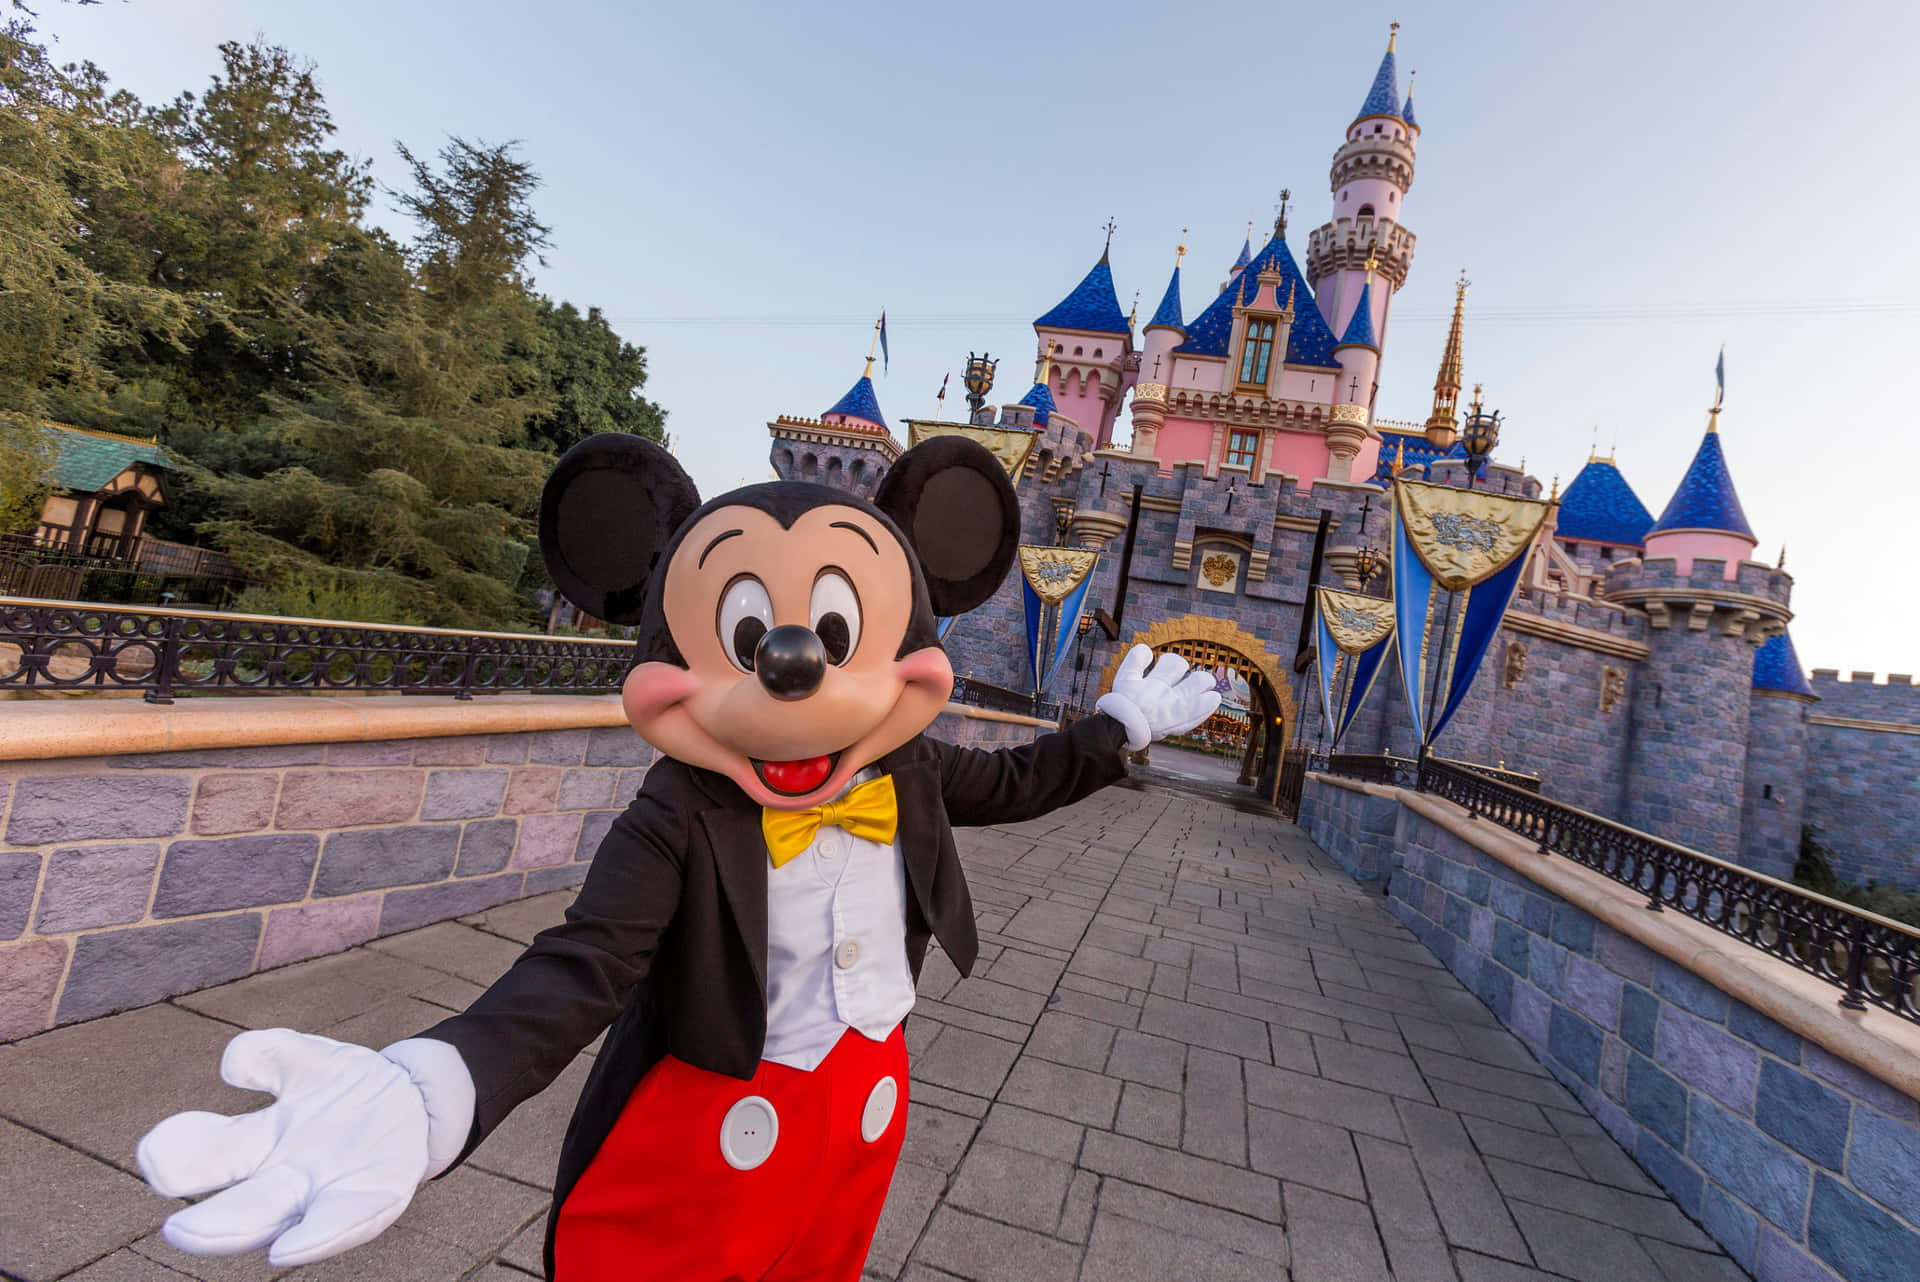 Disneyland billeder af Mickey og Minnie gav værelset et sødt udseende.